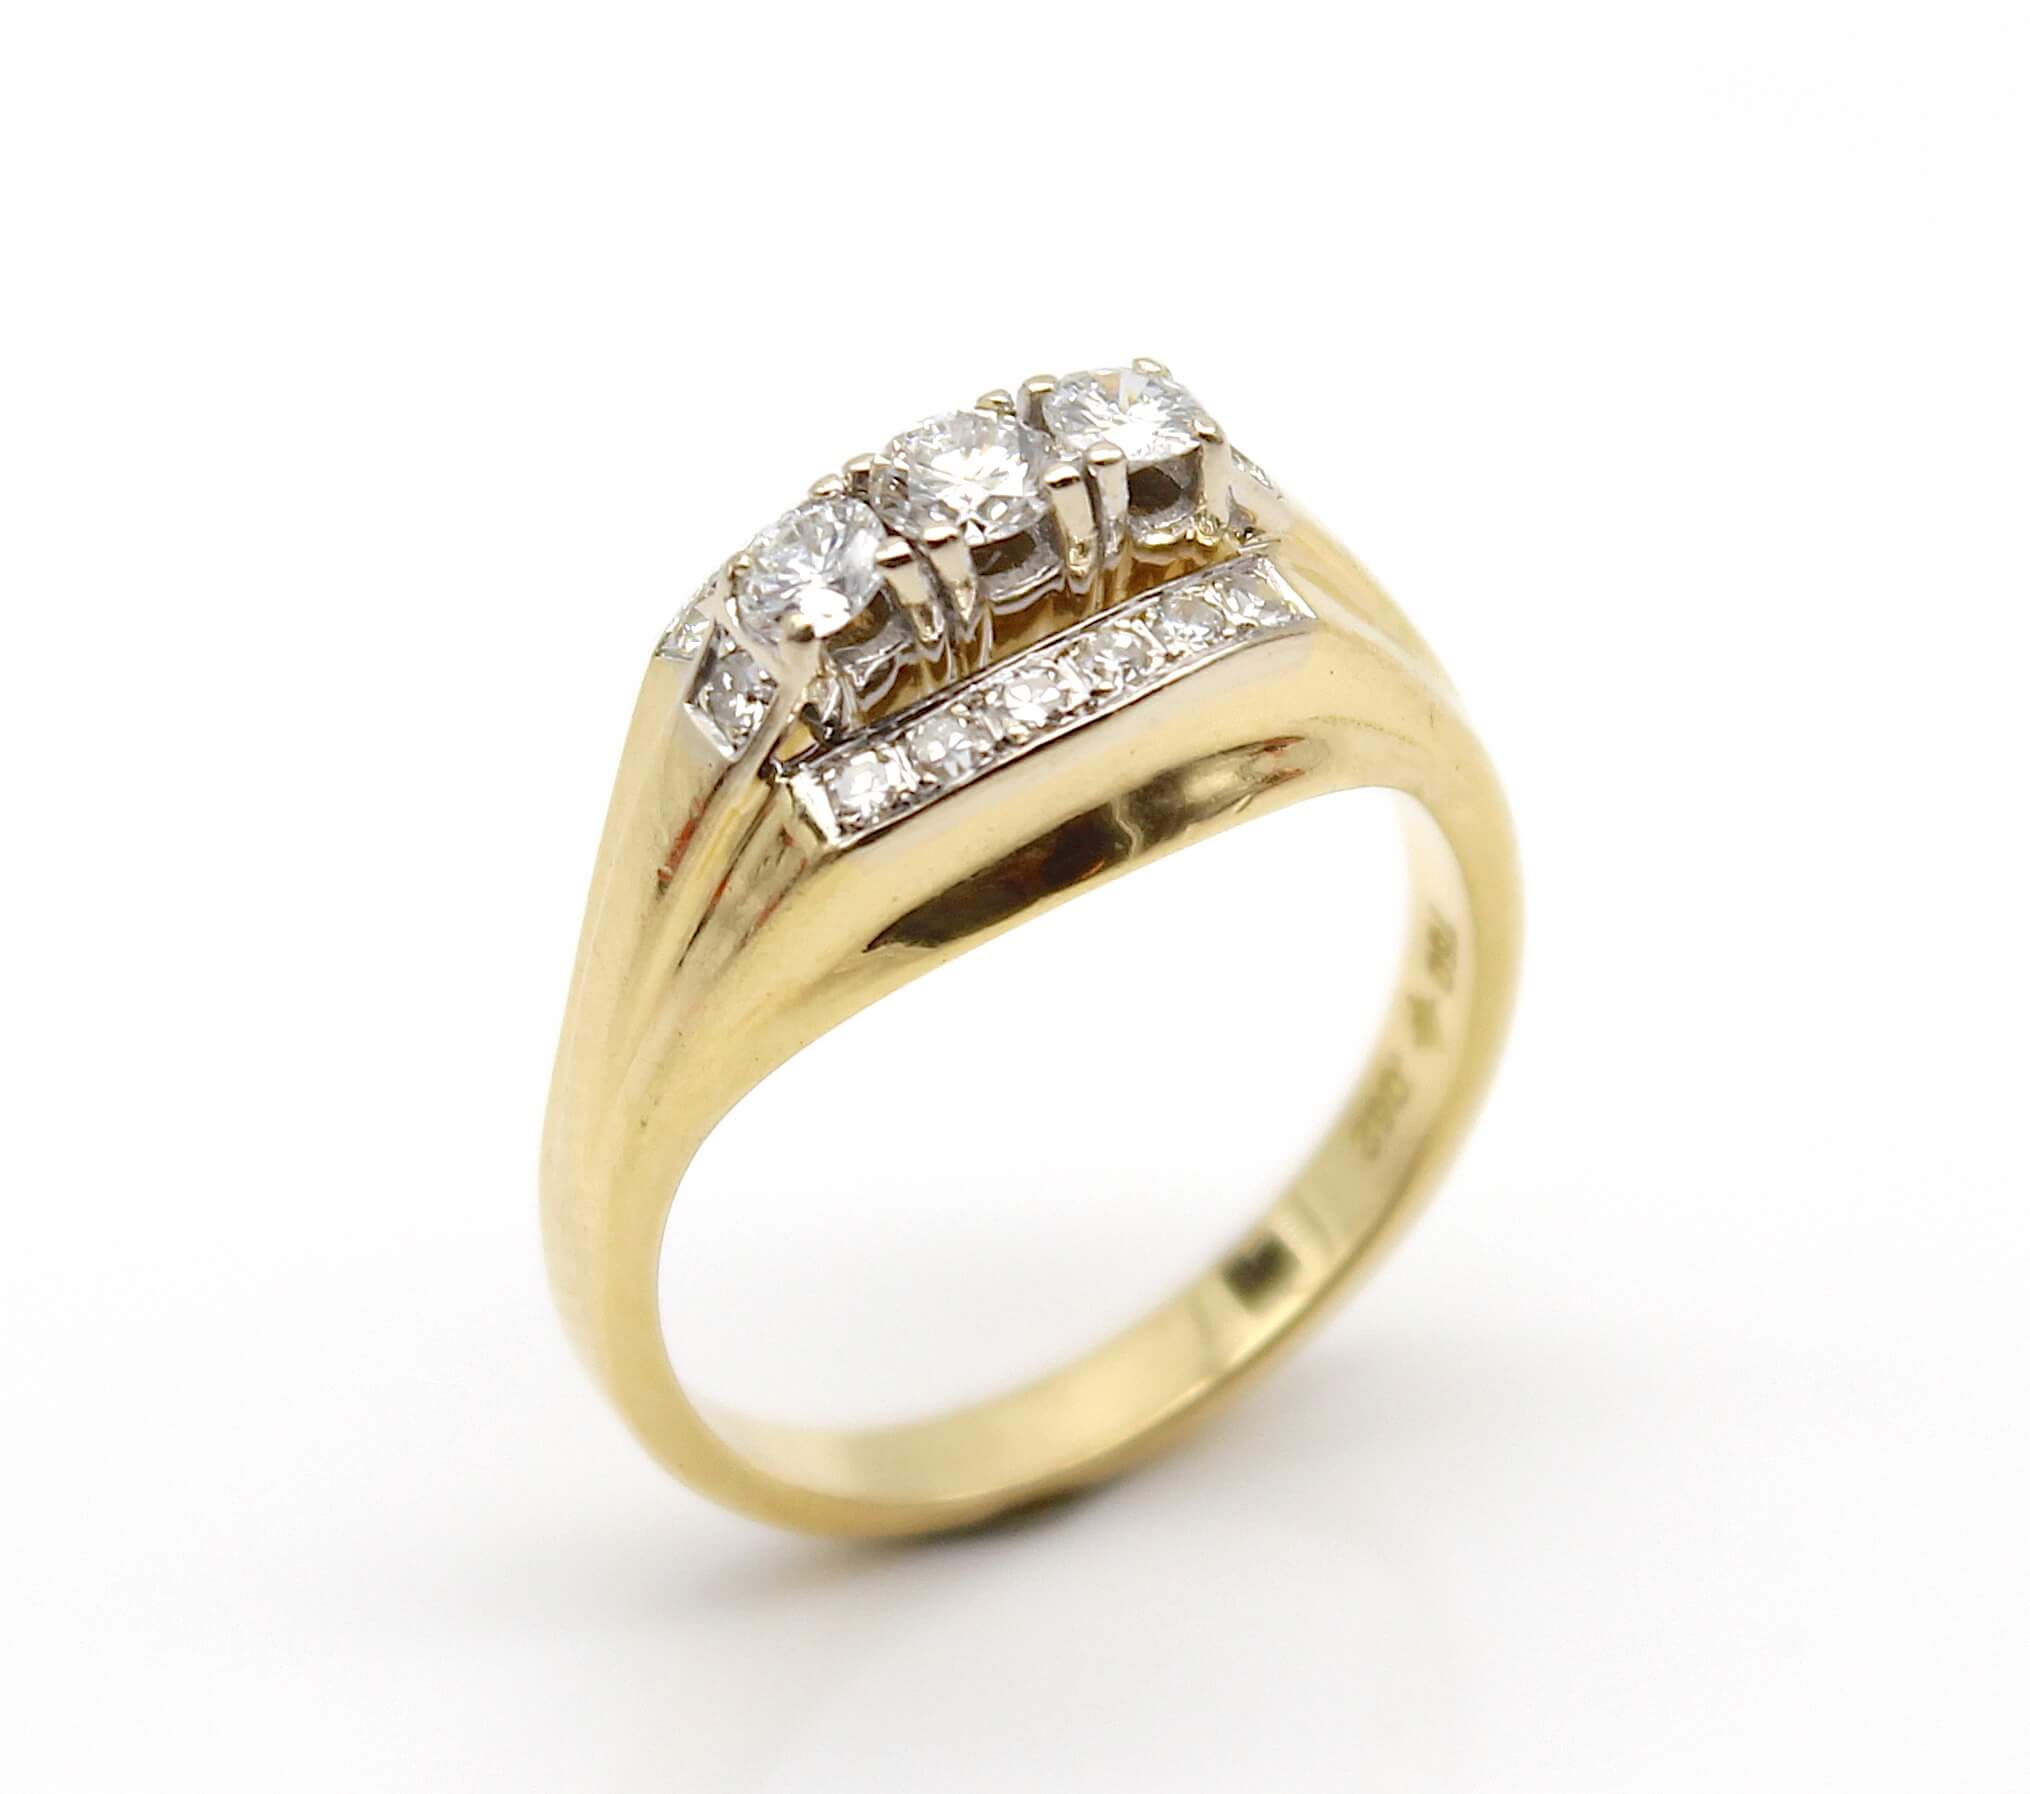 Ring aus 750er Gold mit 17 Diamanten im Brilliant- und Achtkantschliff, gesamt ca. 0,60 ct. Die 3